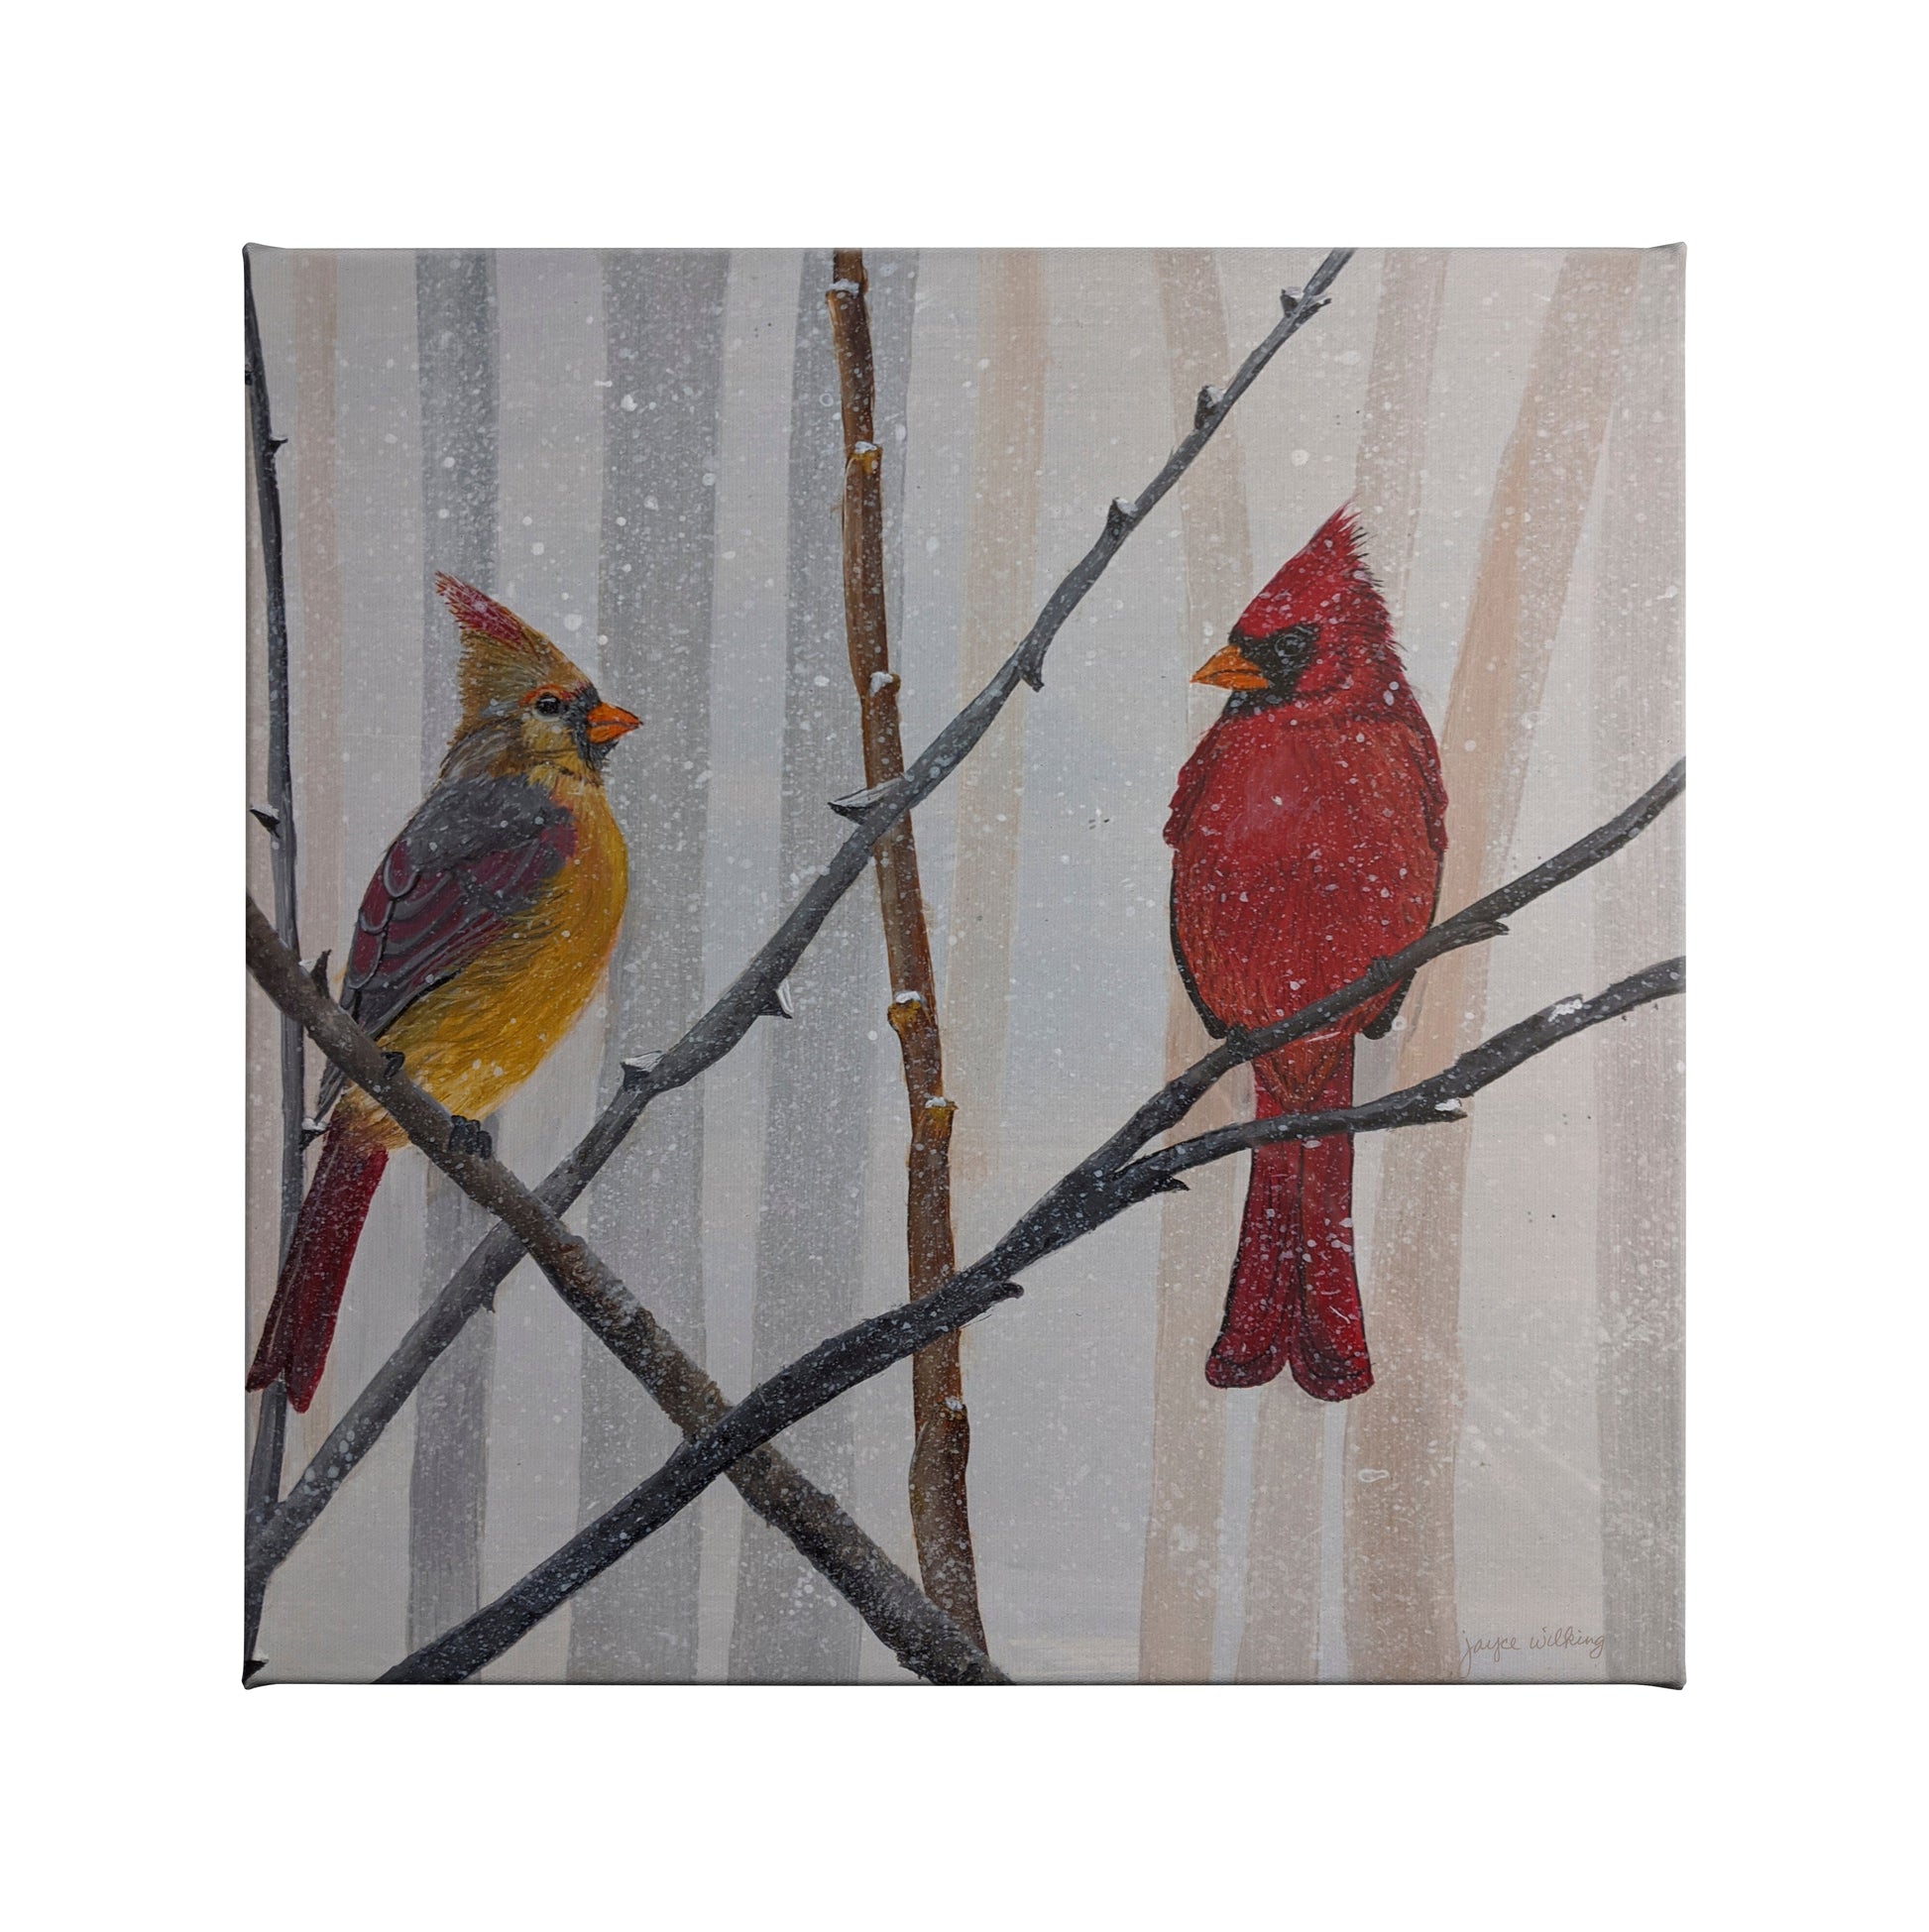 155385_Cardinal Couple in Trees by Joyce Wilking_14x14_F_CGW.jpg